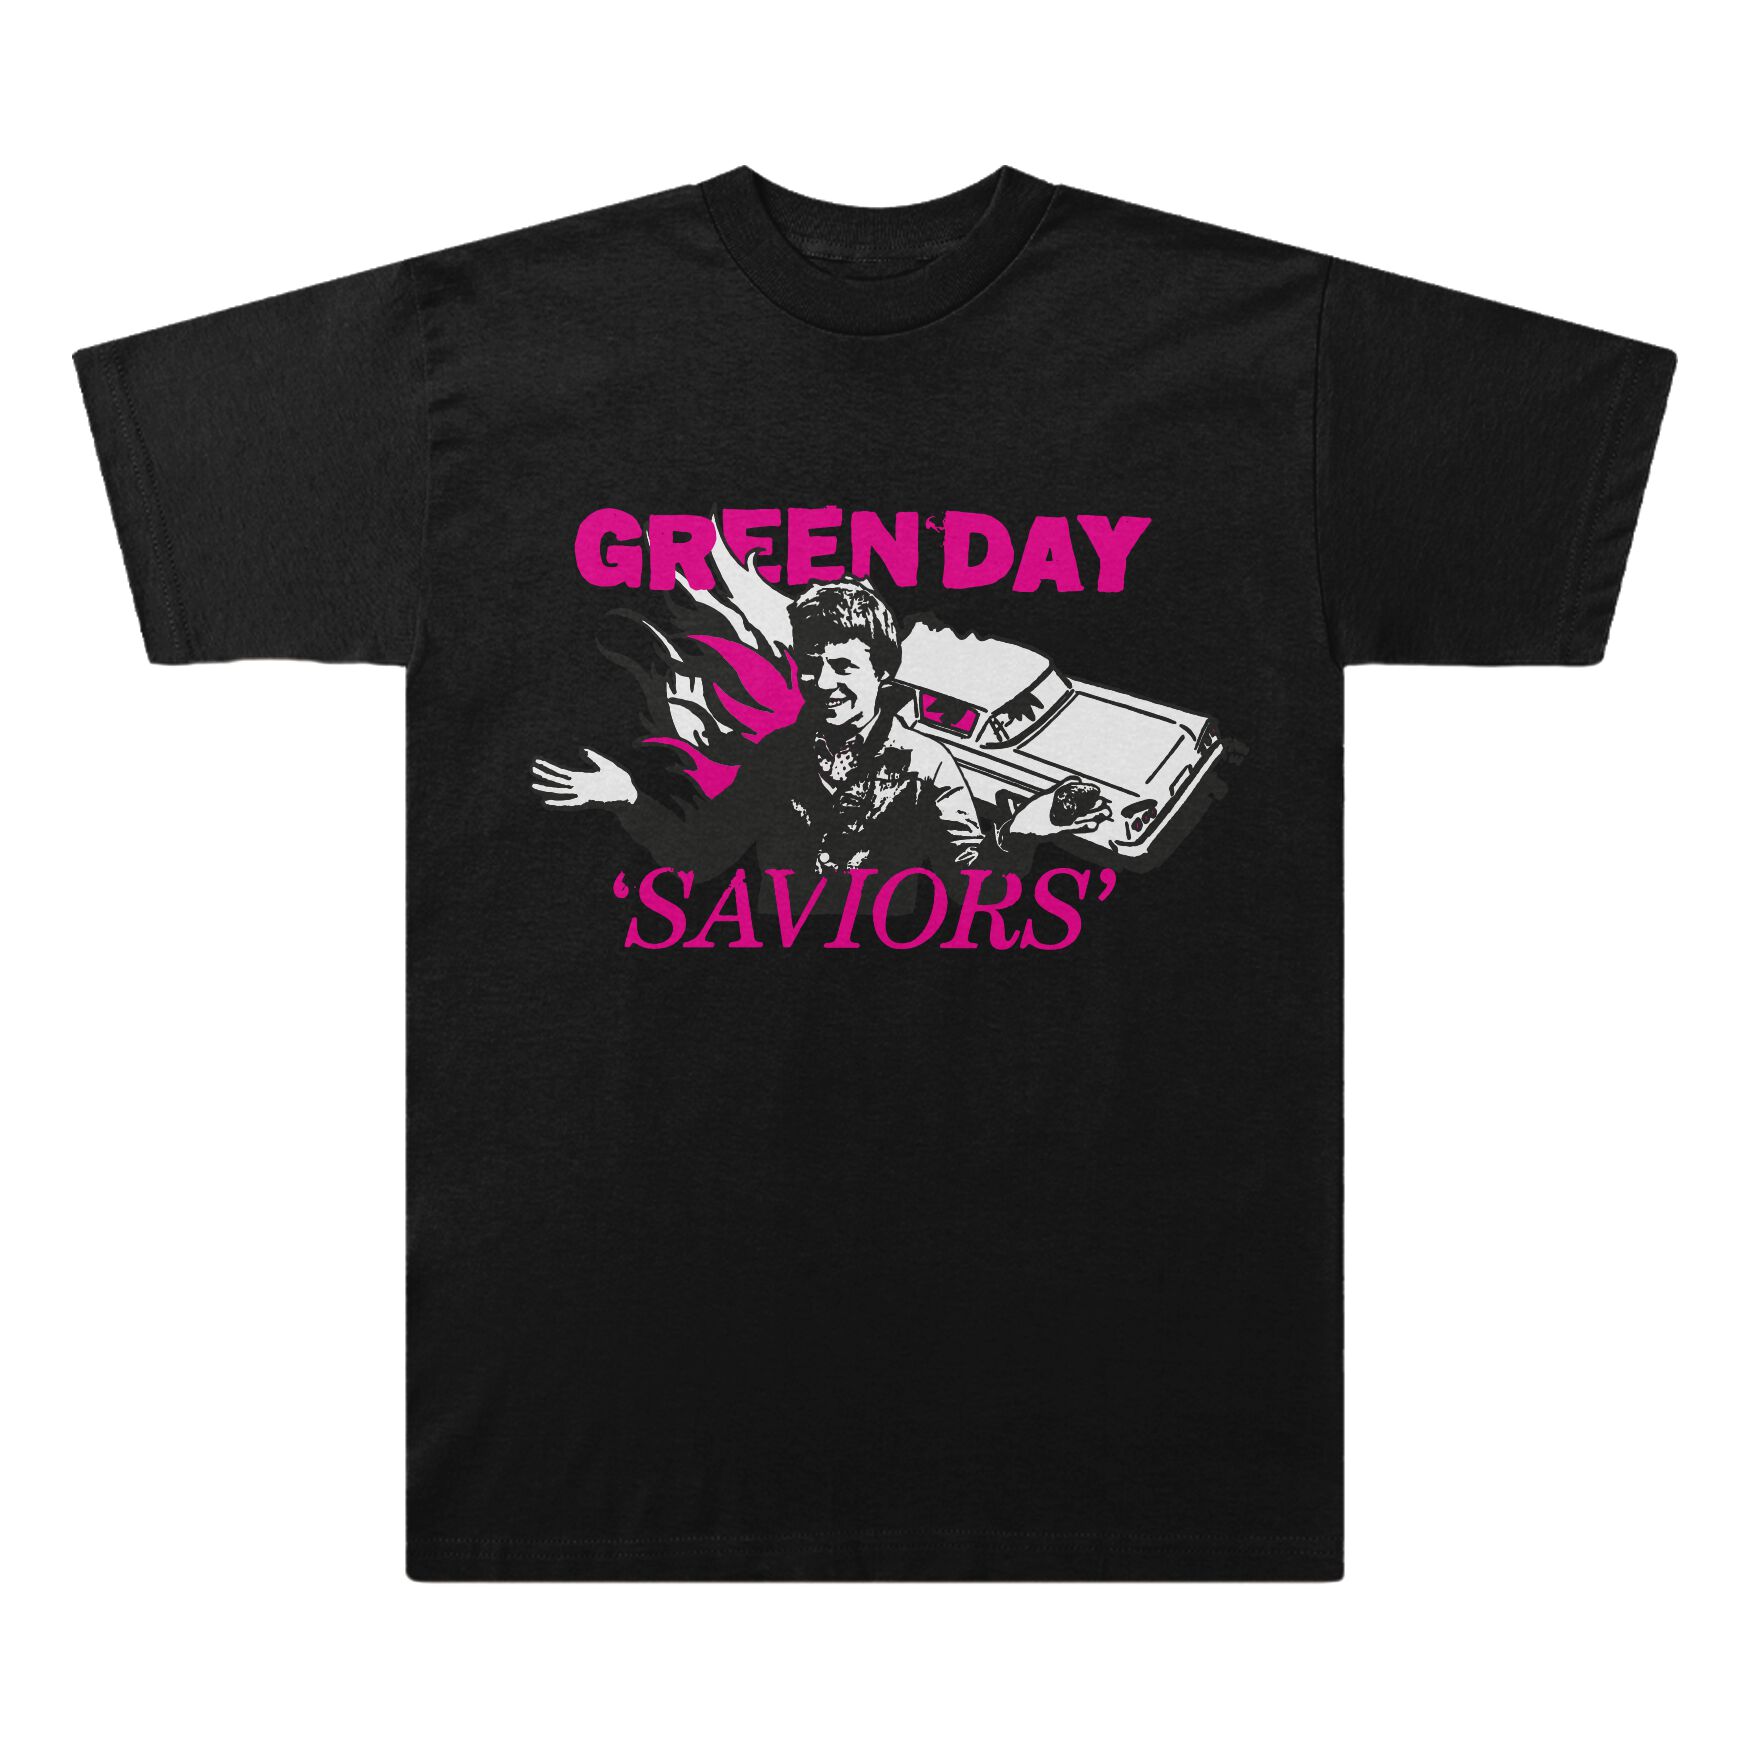 Green Day T-Shirt - Saviors Illustration - S bis XXL - für Männer - Größe XXL - schwarz  - Lizenziertes Merchandise!